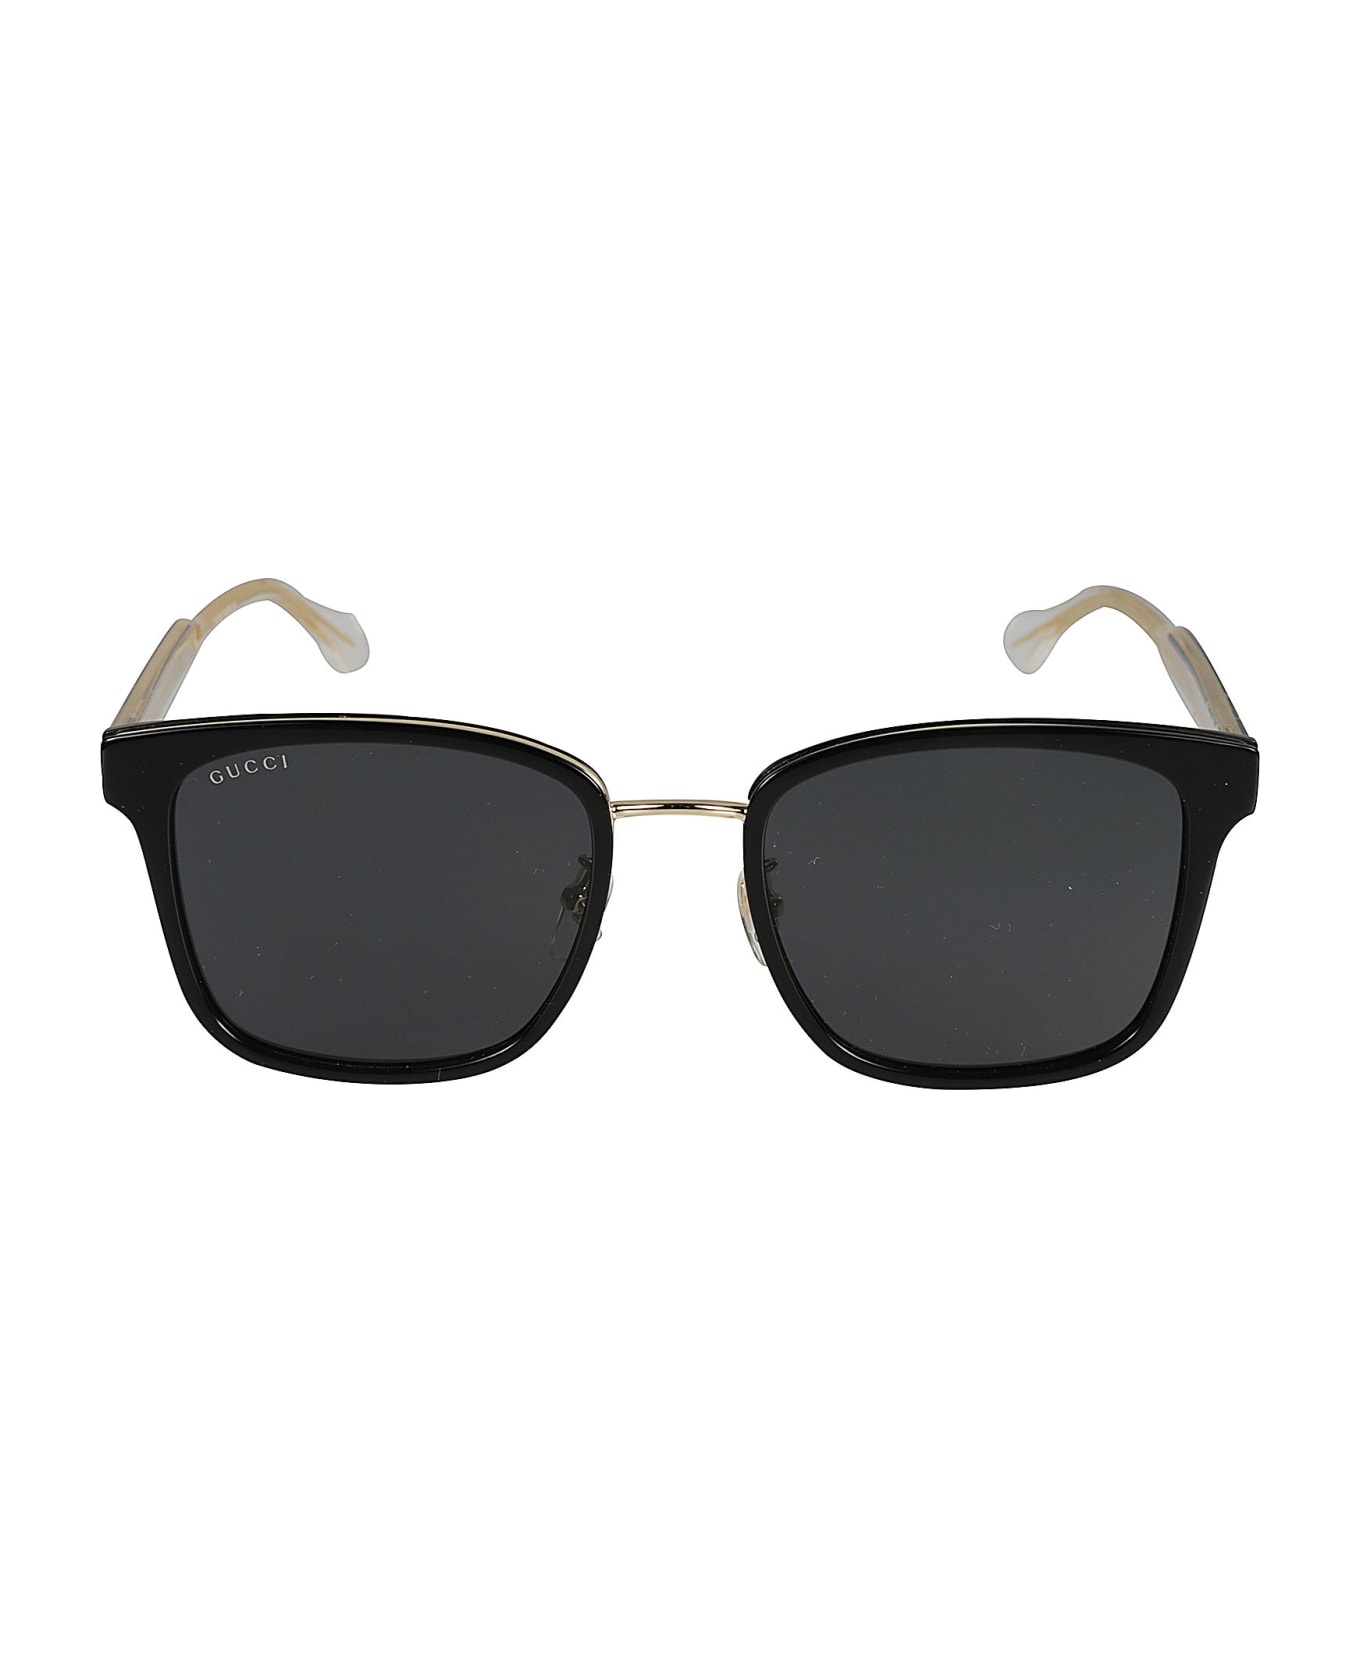 Metal Bridge Classic Sunglasses - 1